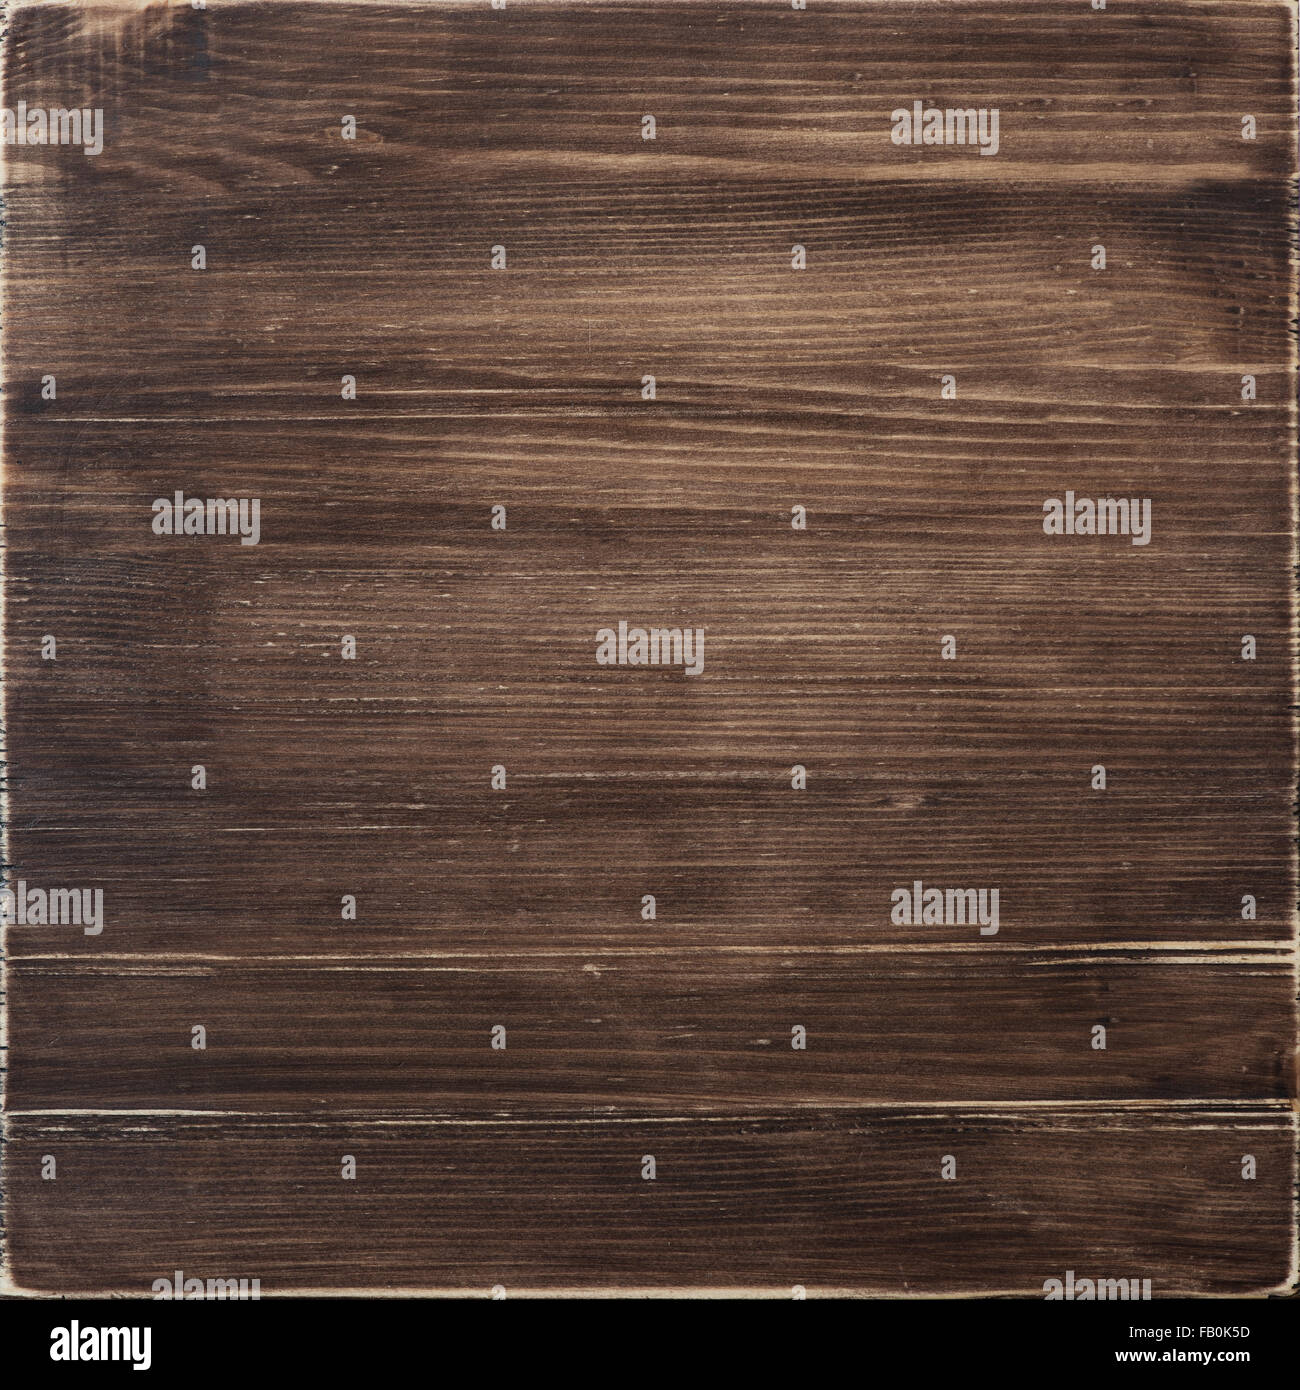 Wooden texture, dark brown wood background Stock Photo